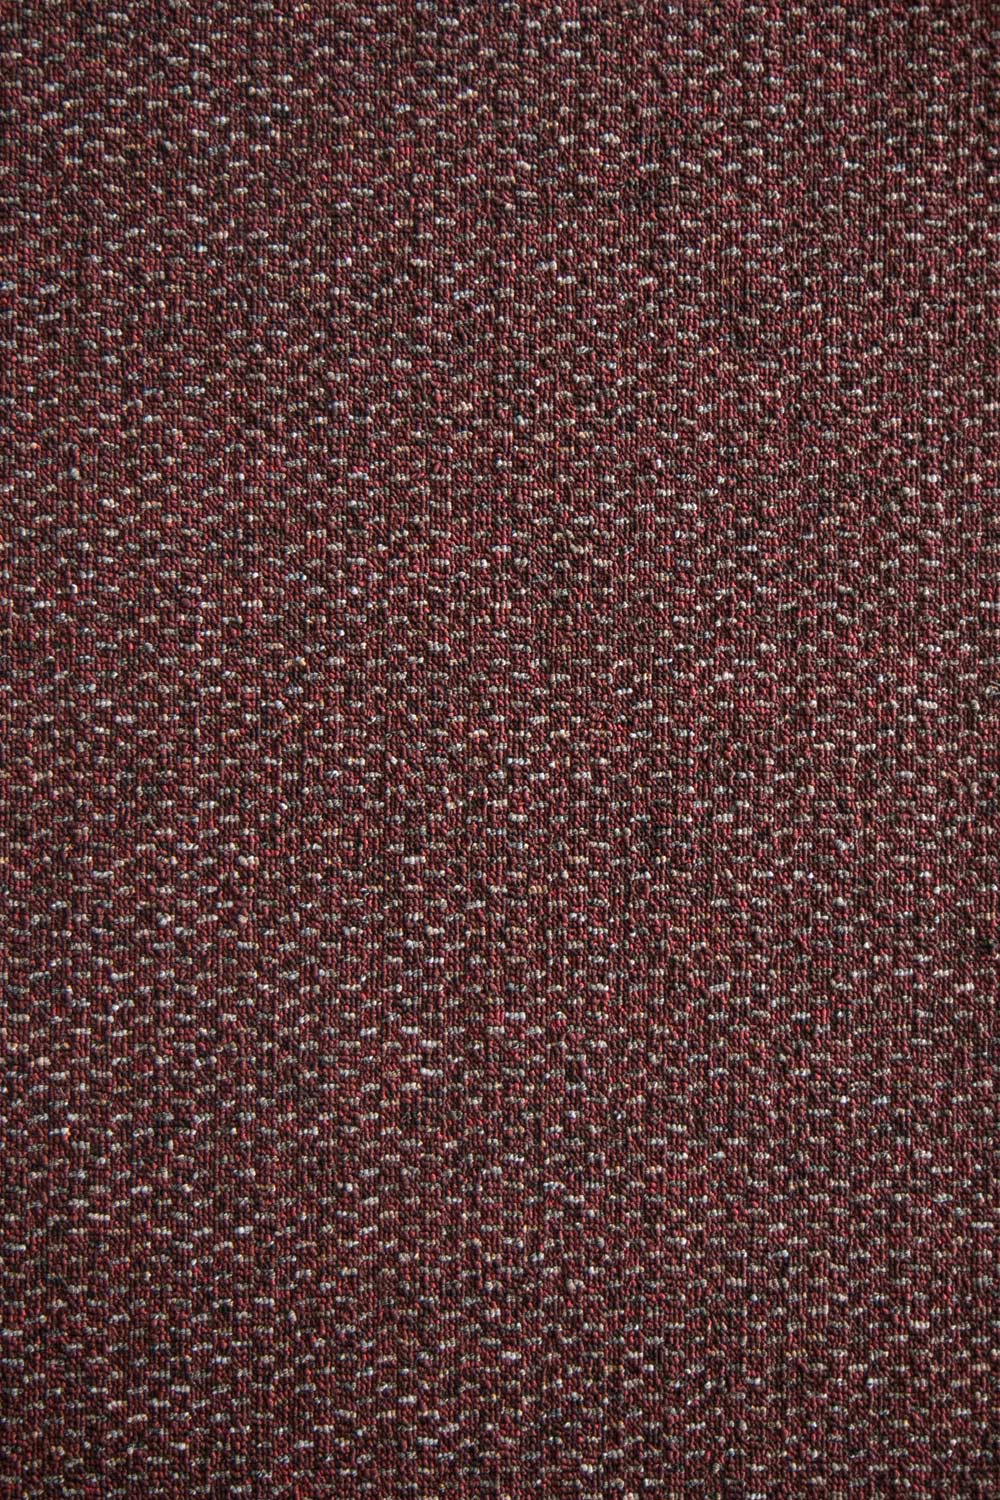 Metrážový koberec Bolton 2159 500 cm